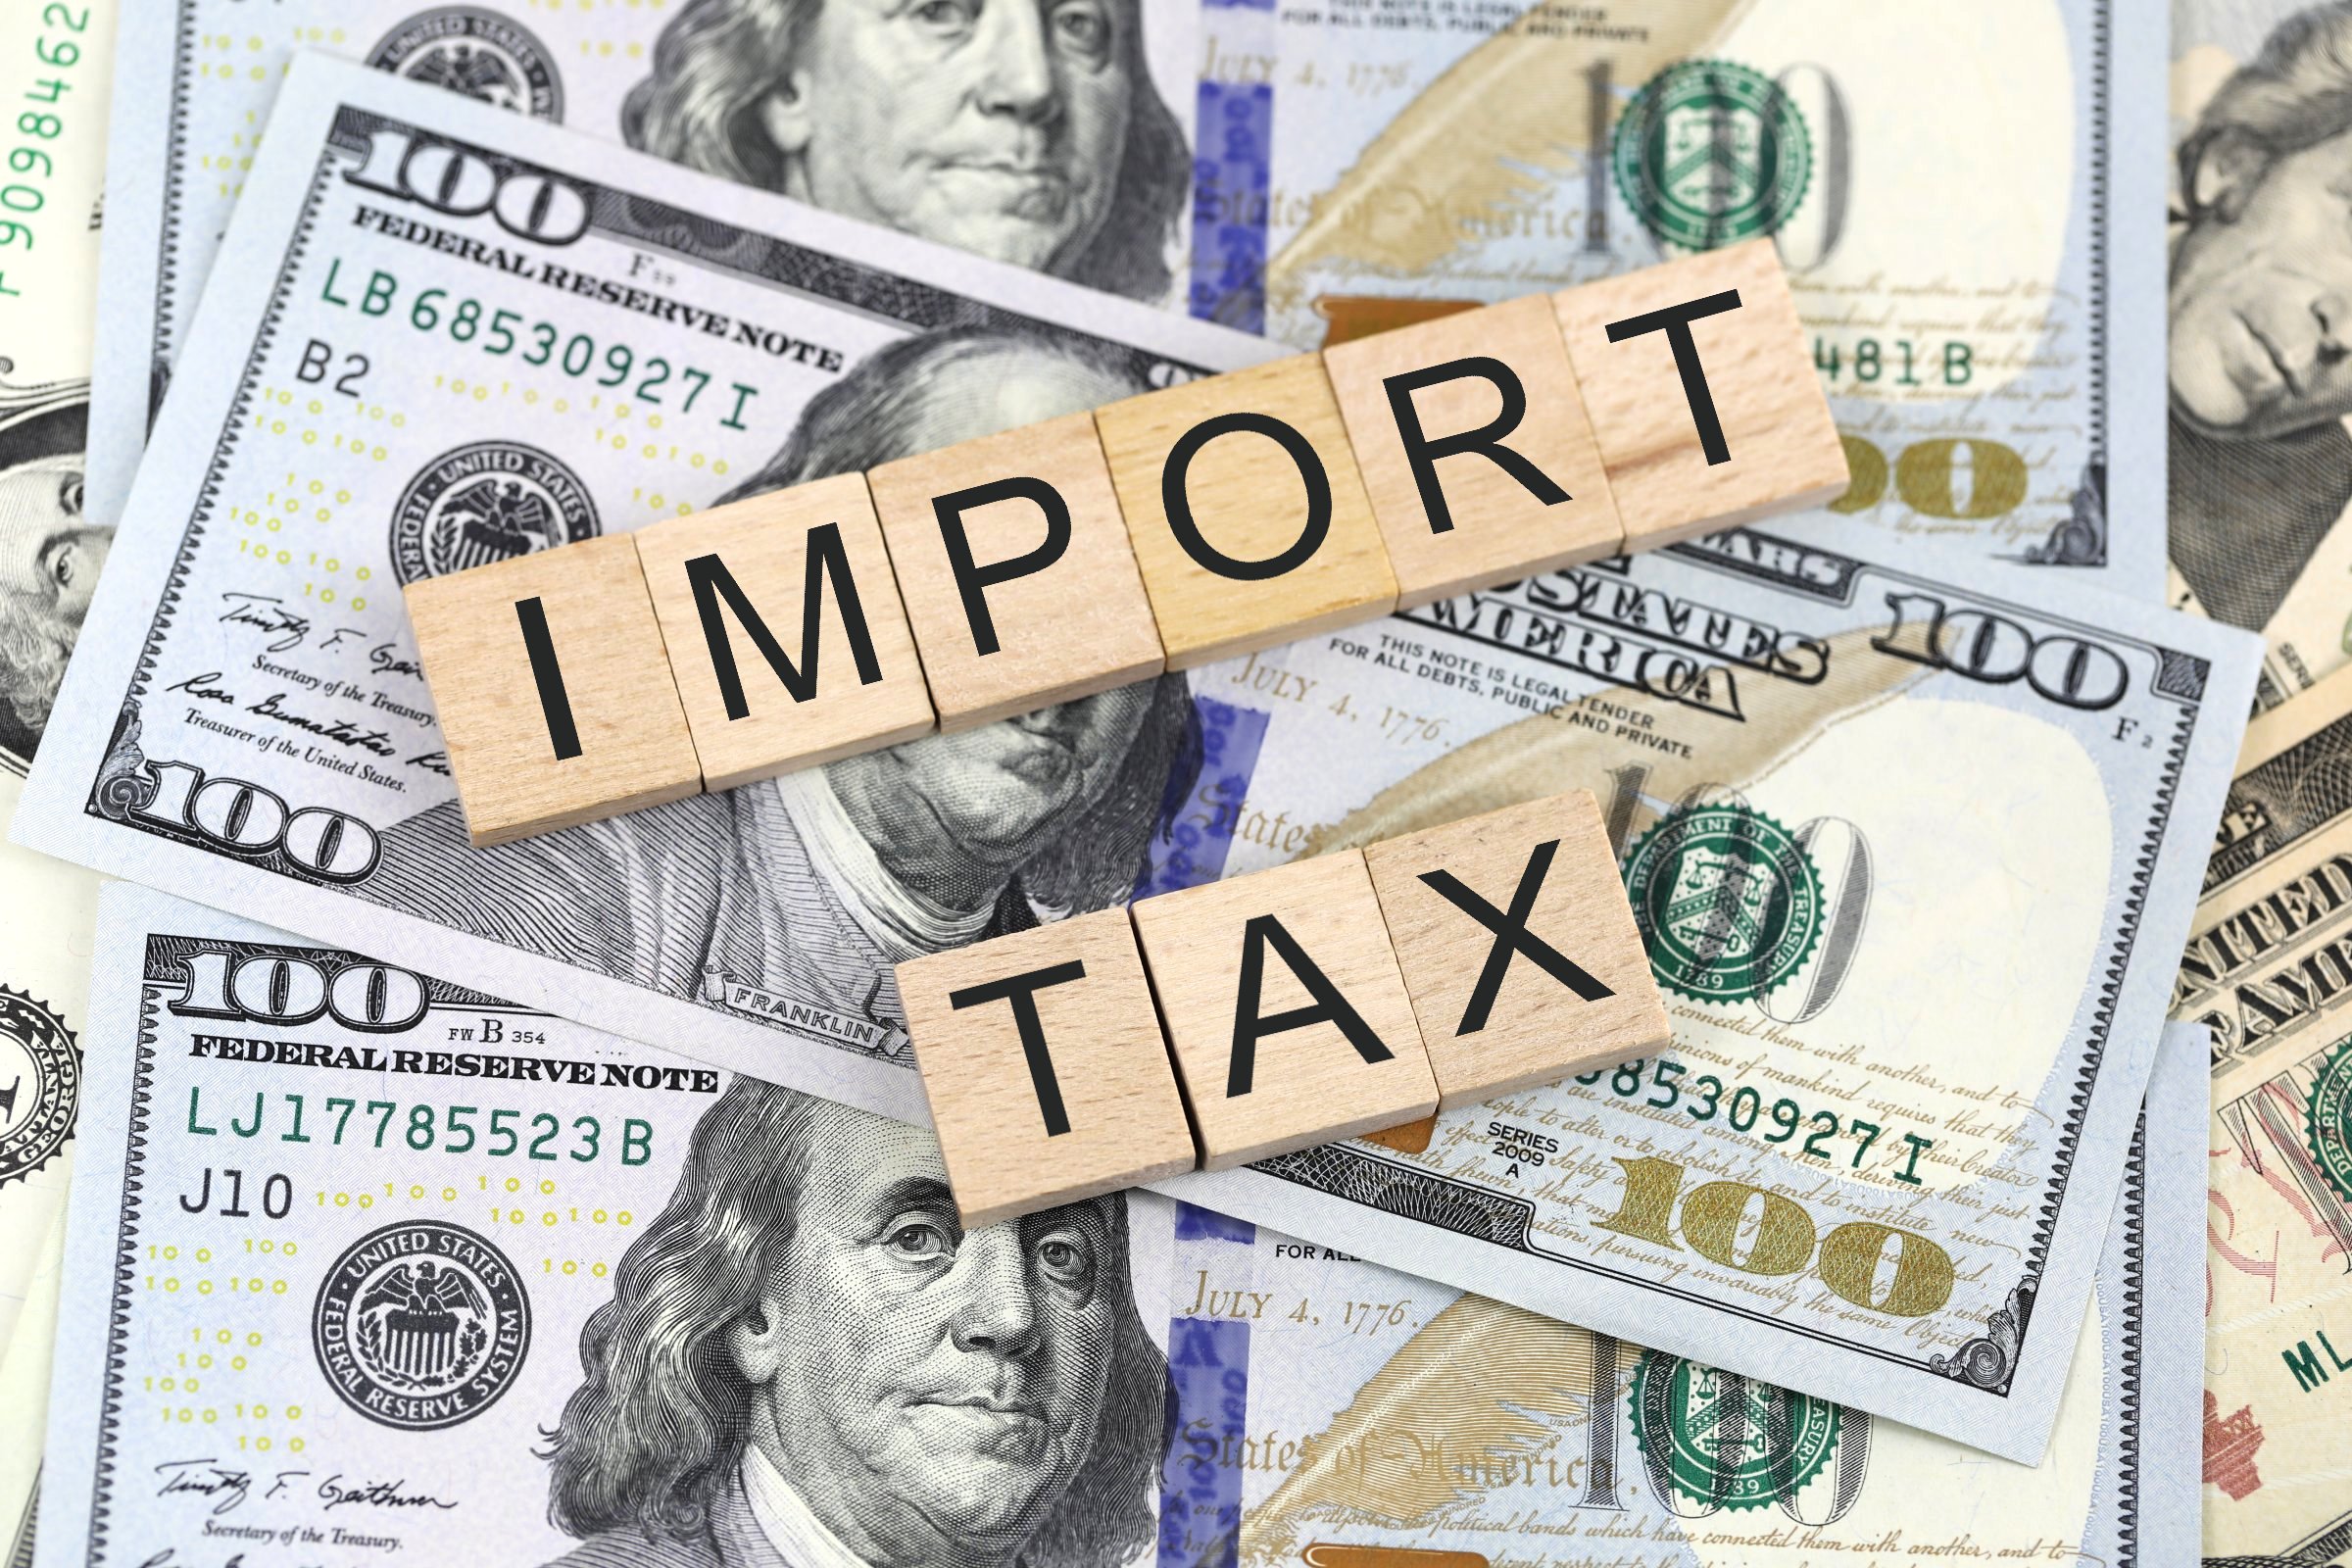 import tax